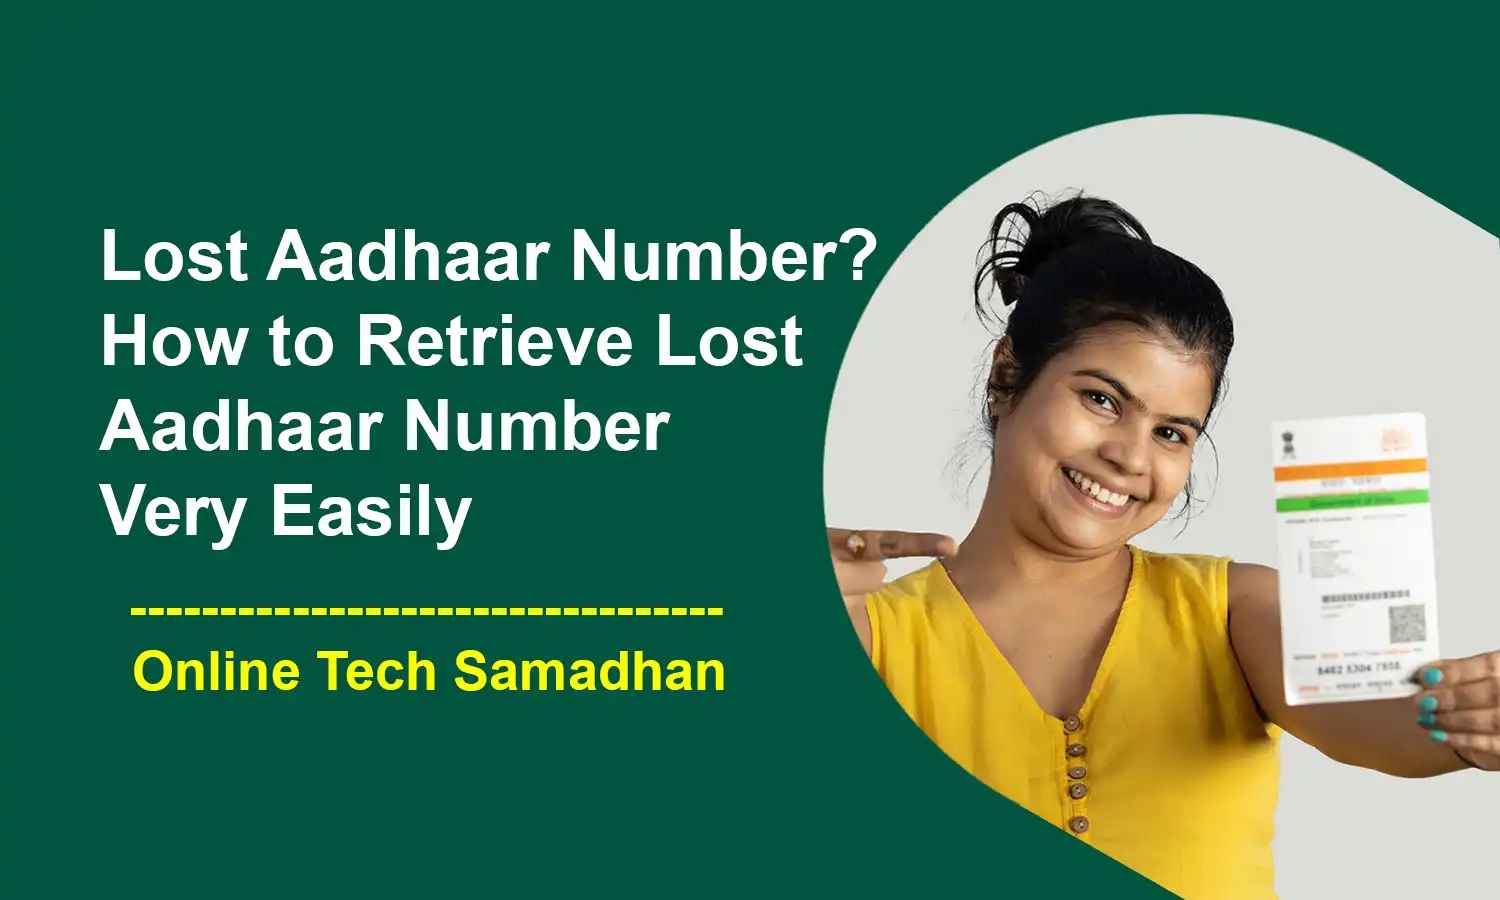 How to Retrieve Lost Aadhaar Number